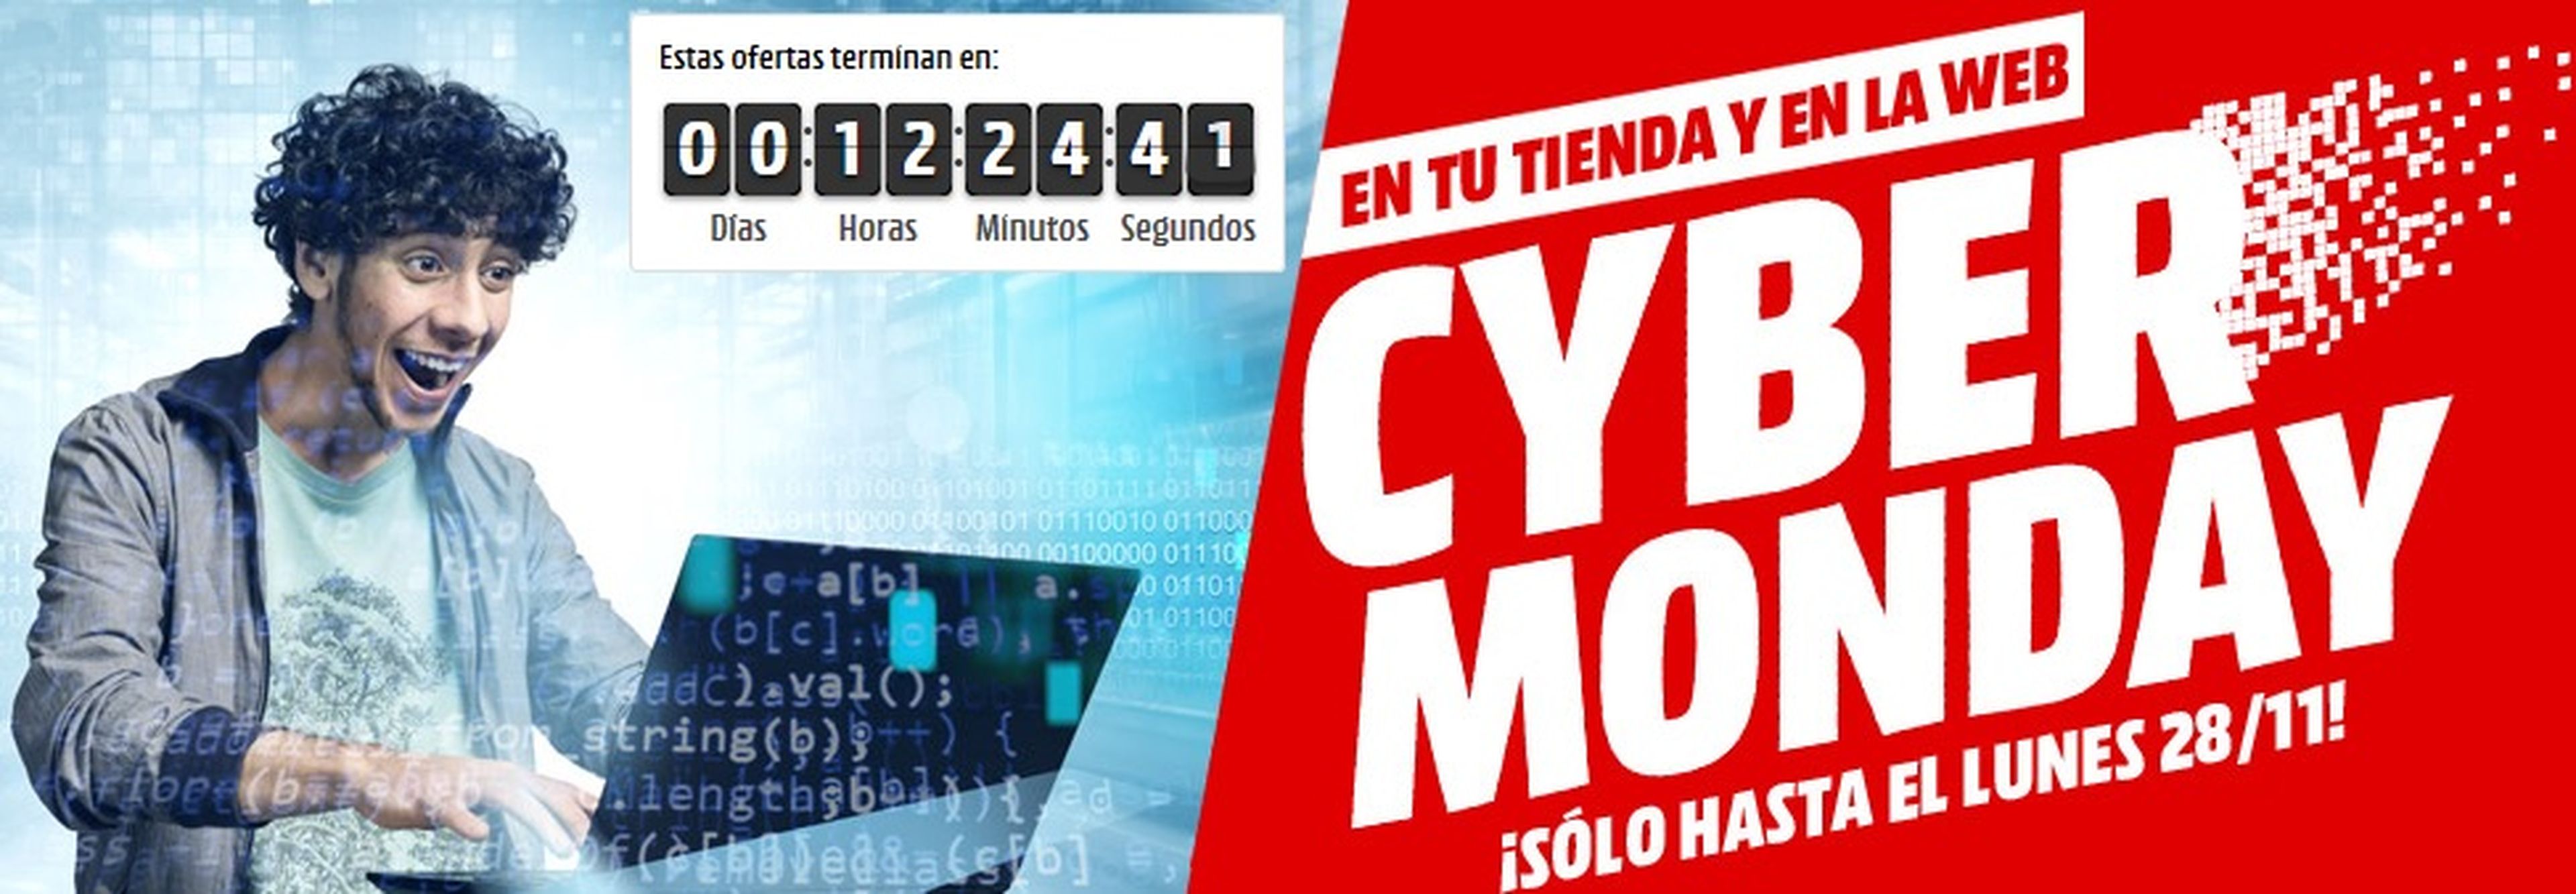 Cyber Monday MediaMarkt